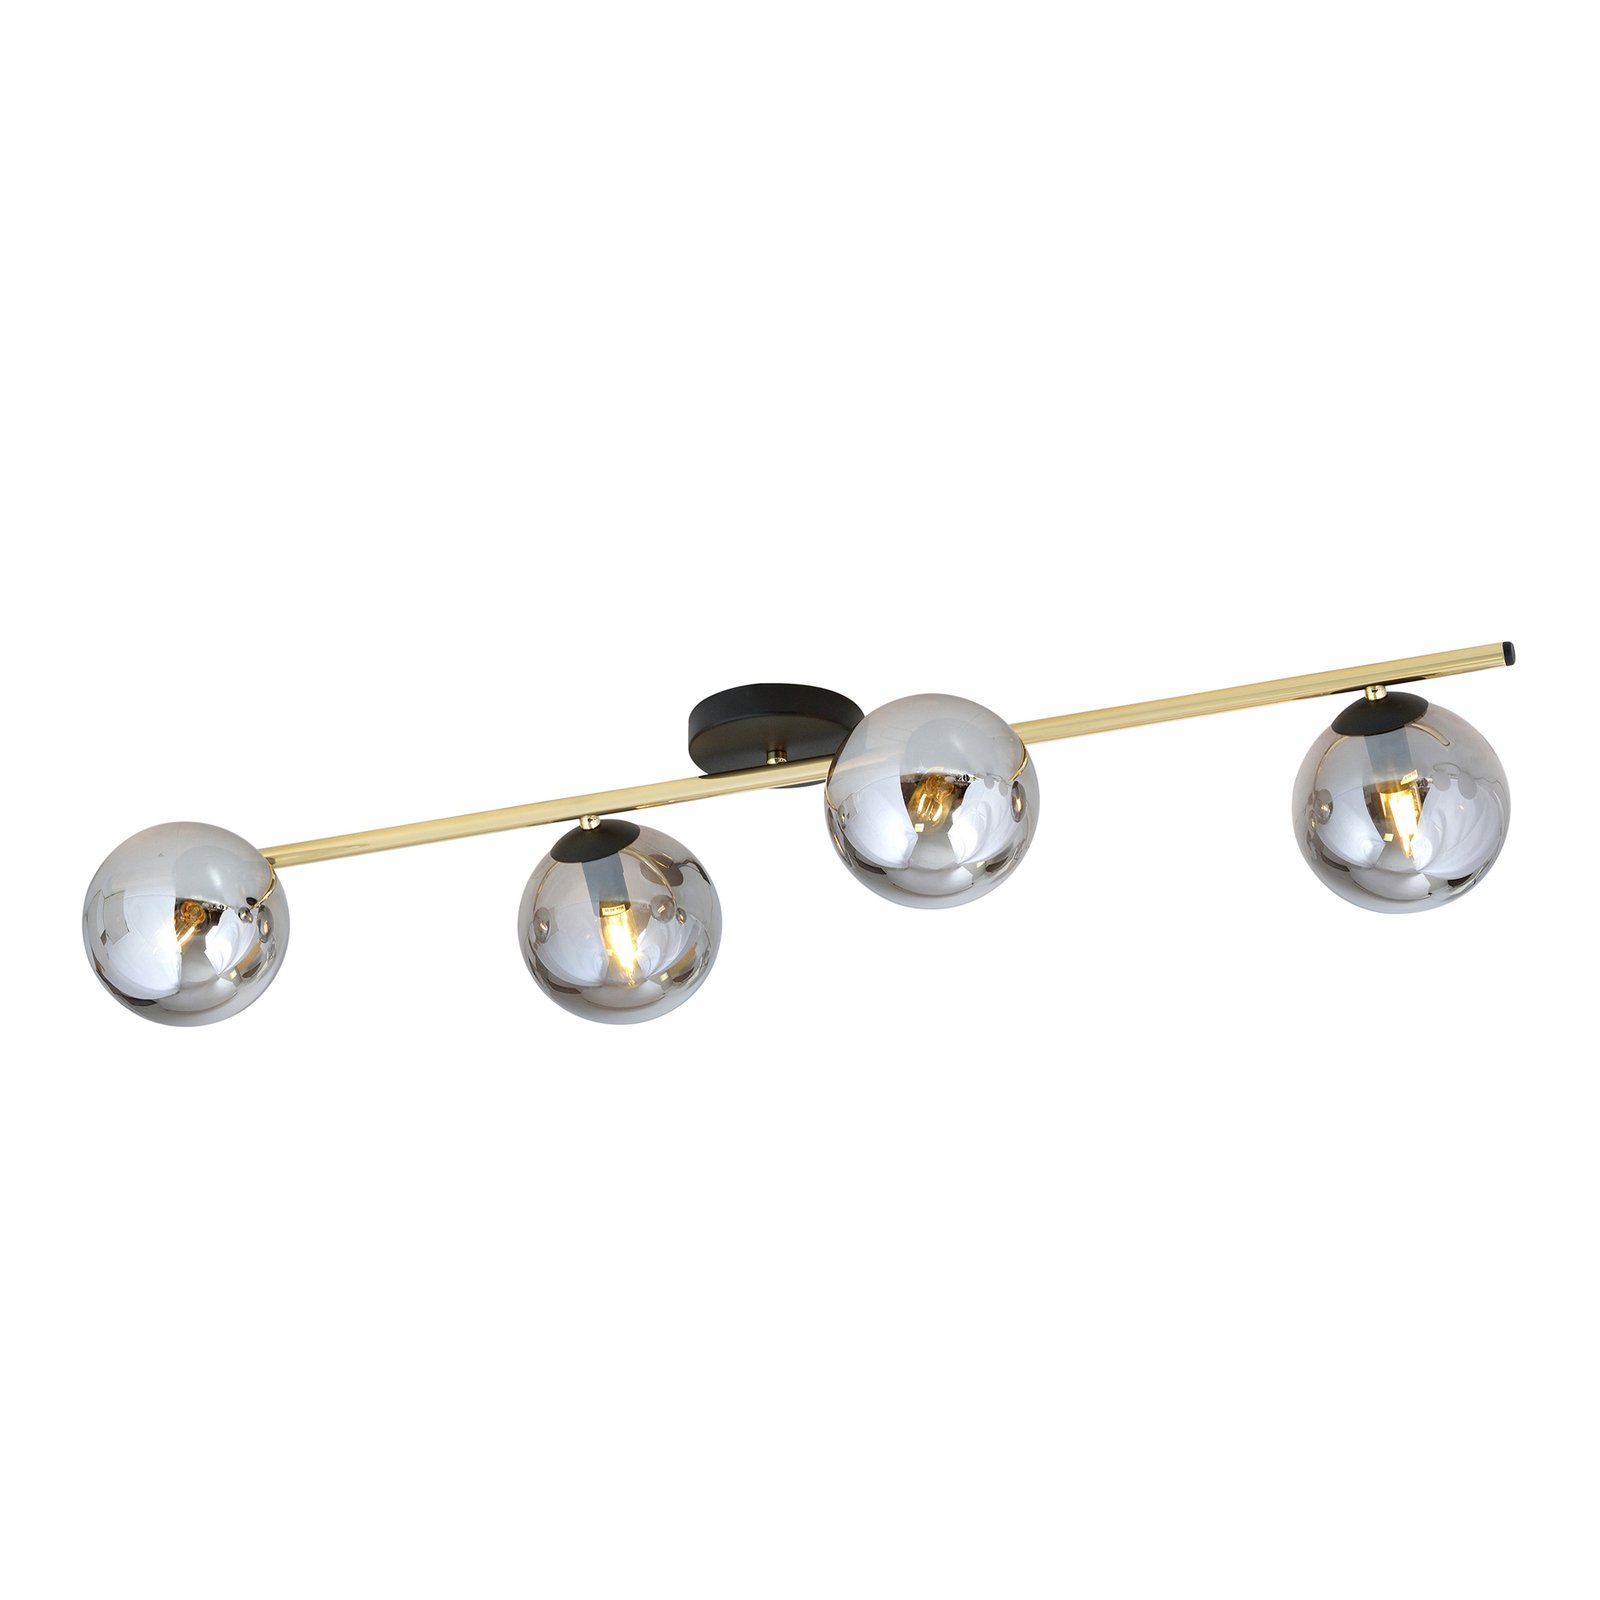 Deckenlampe Glassy 4-flg. linear schwarz/gold/grau